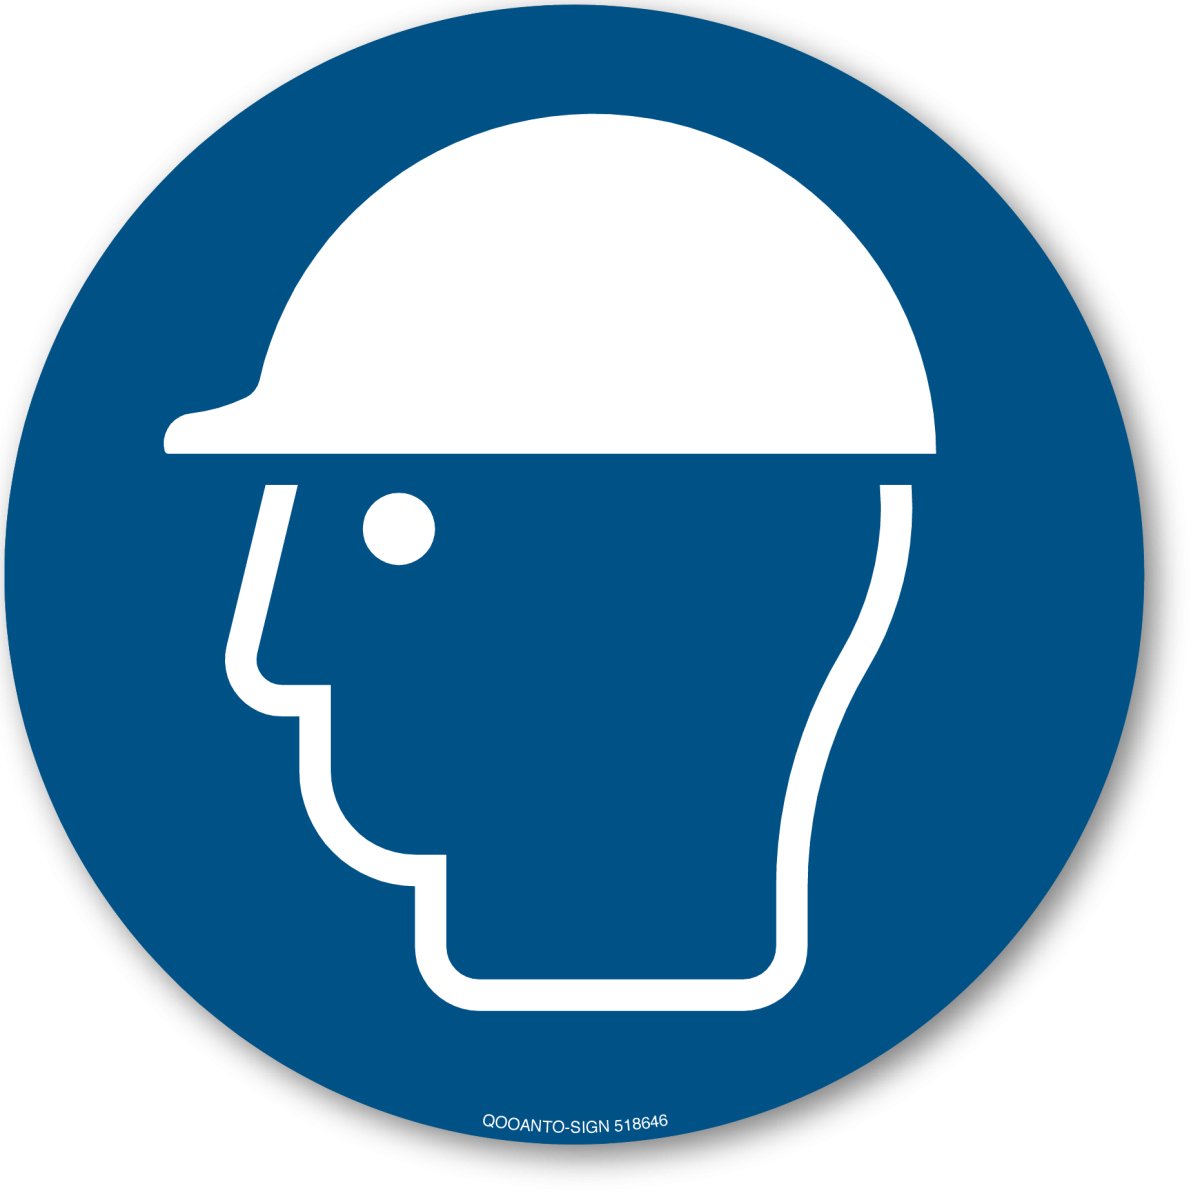 Kopfschutz Benutzen, EN ISO 7010, M014 Gebotsschild oder Aufkleber aus Alu-Verbund oder Selbstklebefolie mit UV-Schutz - QOOANTO-SIGN